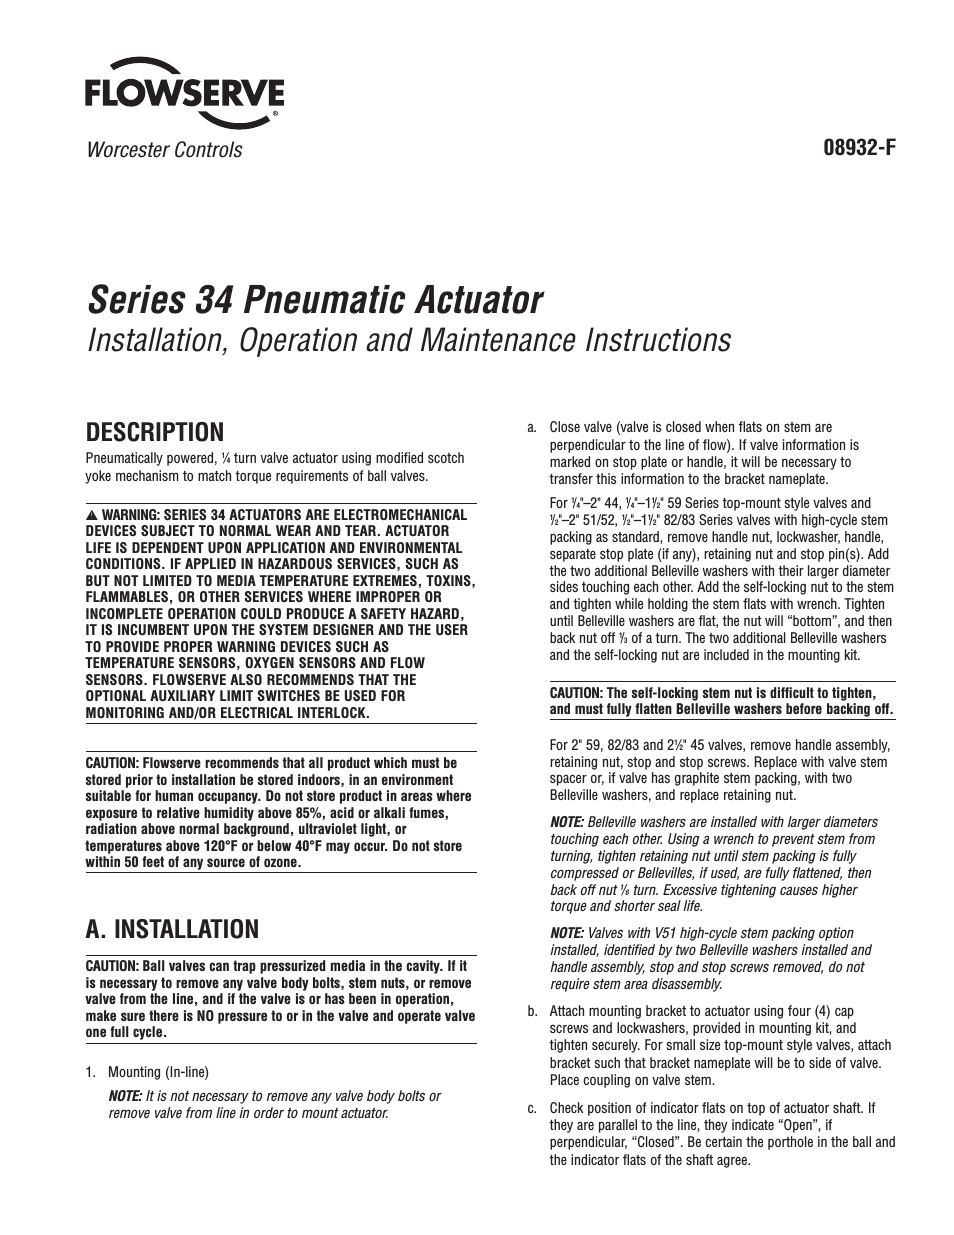 34 Series Pneumatic Actuator